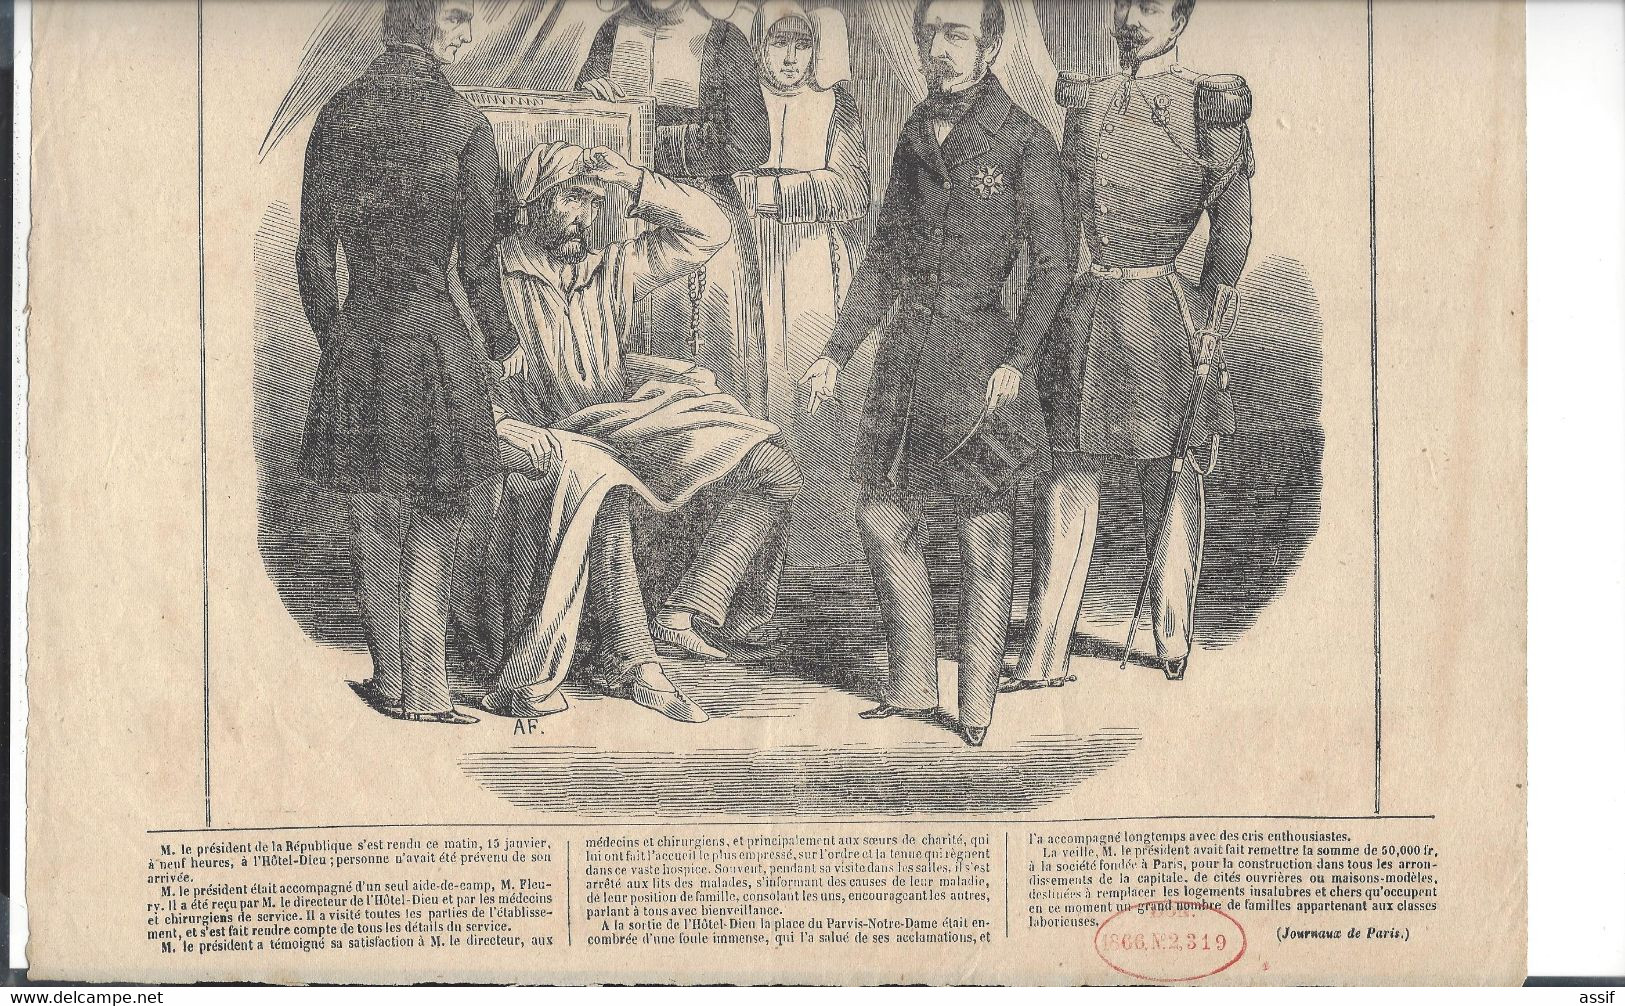 Affiche Feuille Volante  Louis  Napoléon  Bonaparte Visitant Les Pauvres Malades De L'Hôtel-Dieu  2 è République 1848 - Affiches